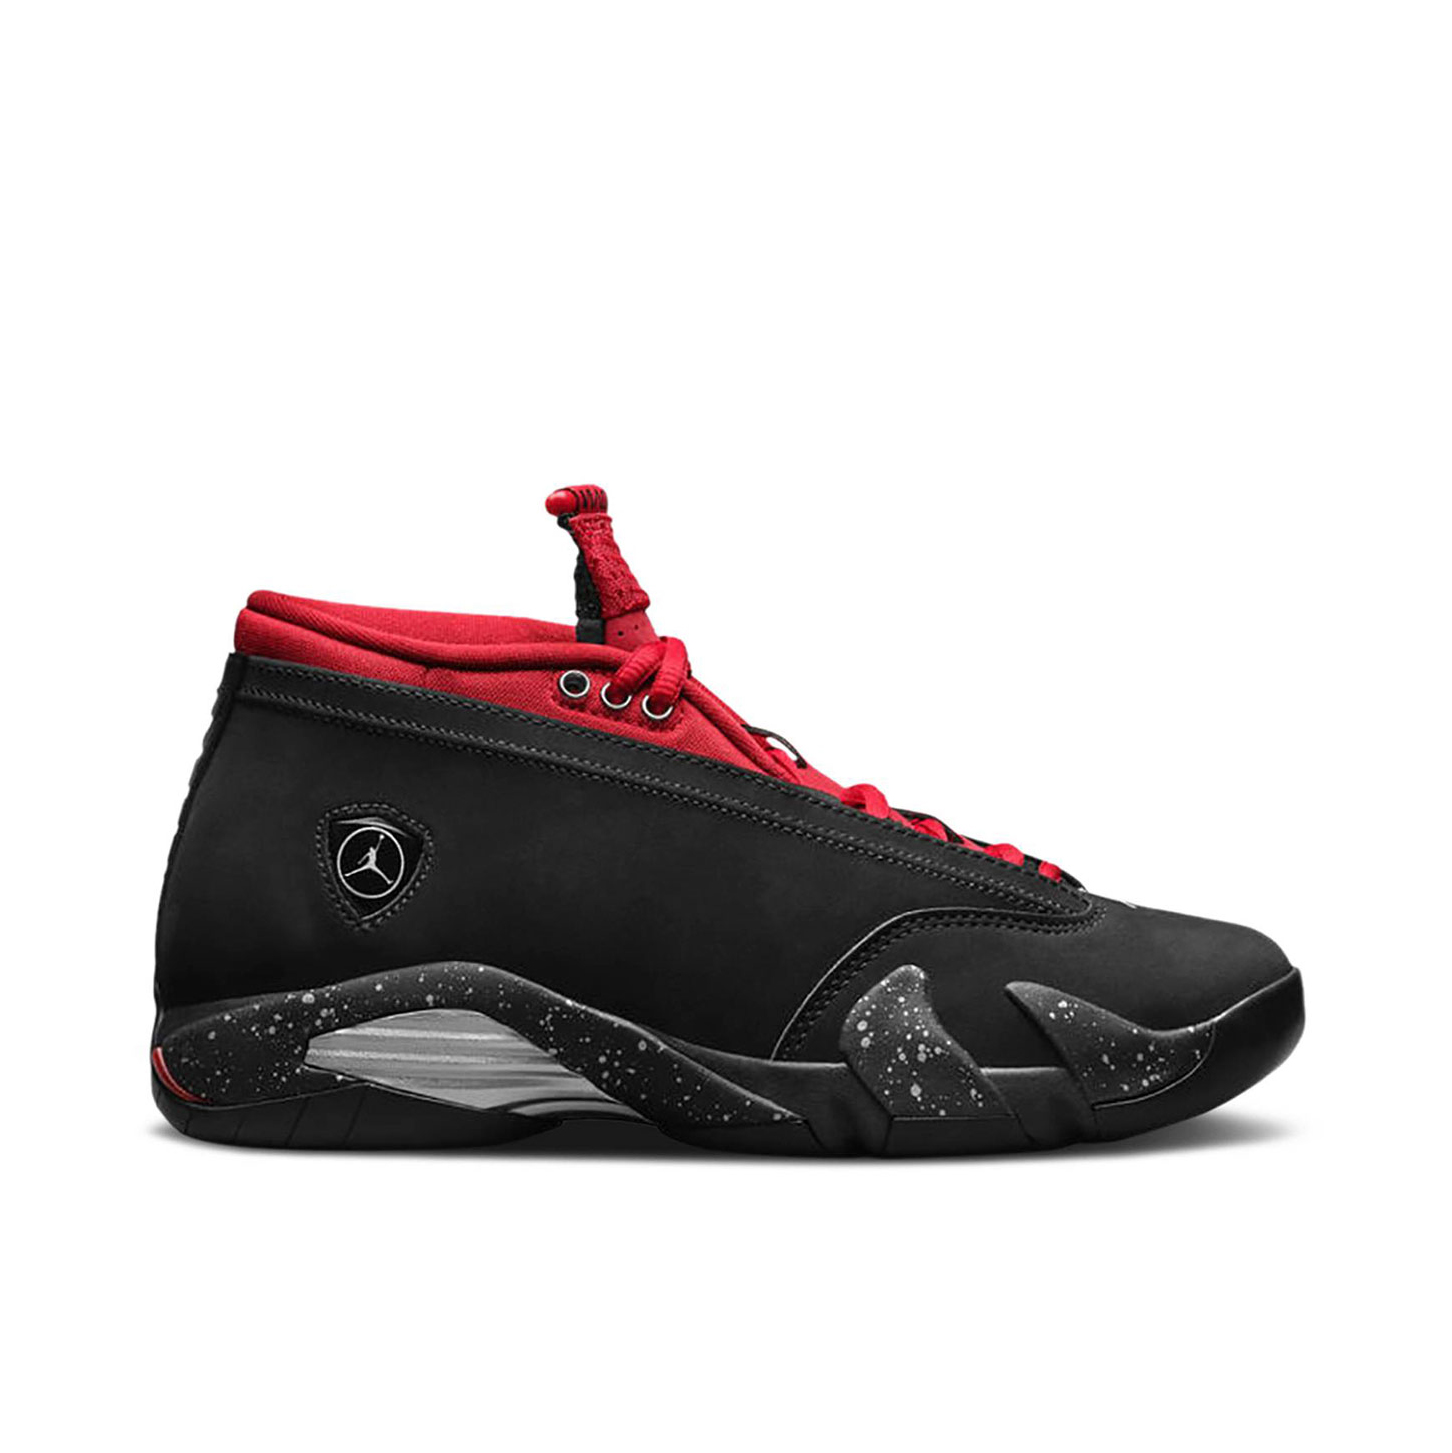 Air Jordan 14 Trainers | Online Air Jordan Sneakers | Laced